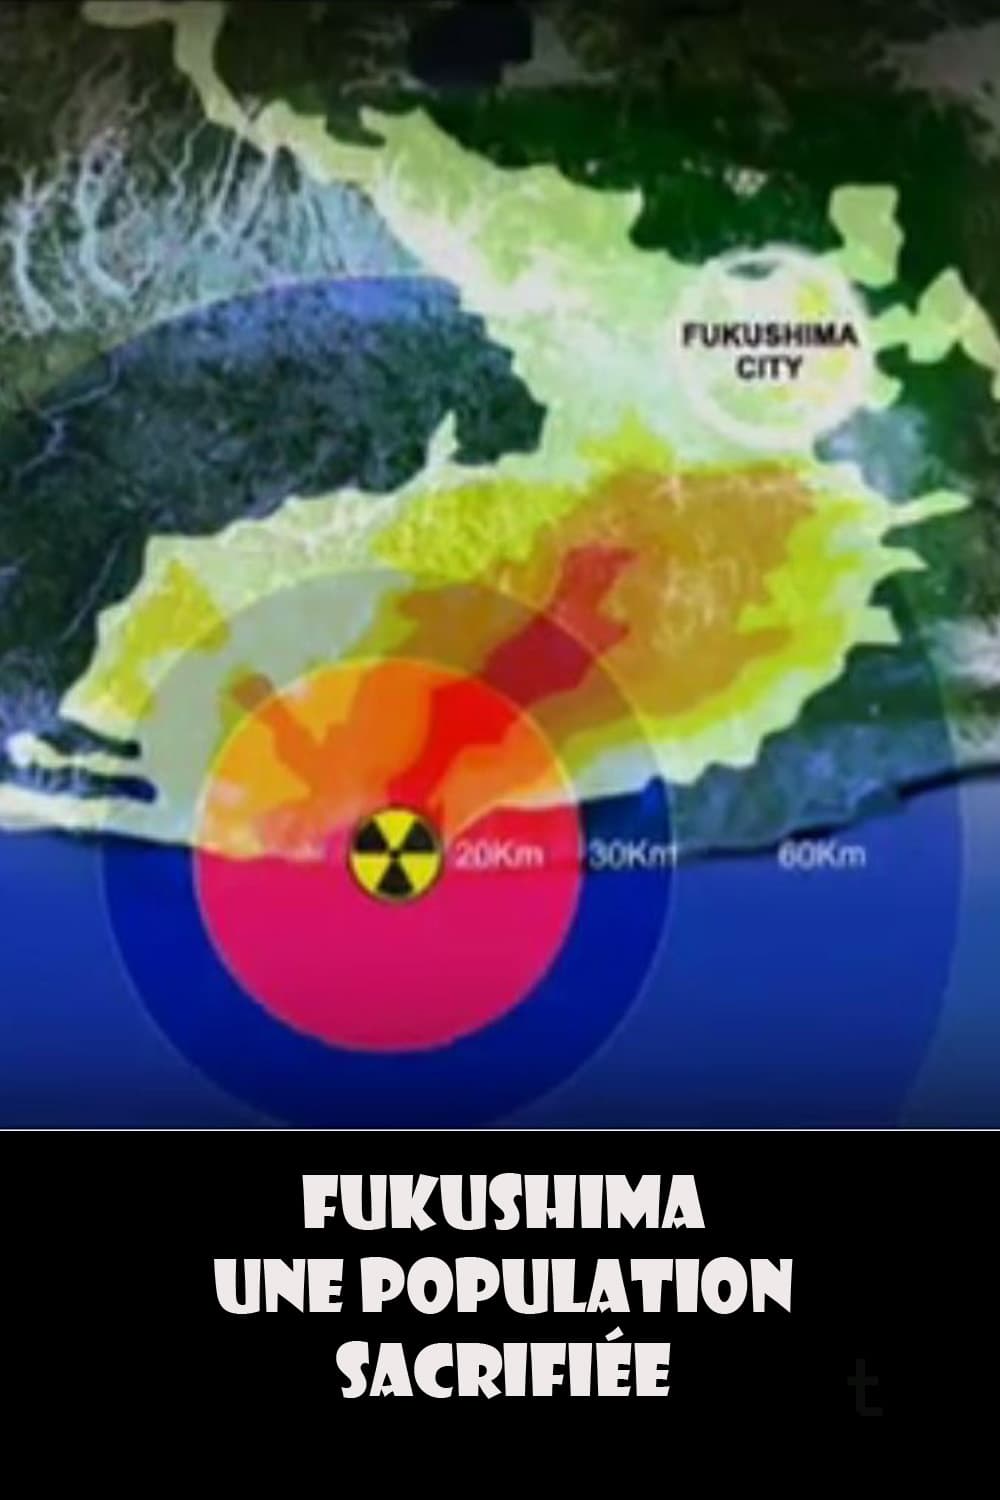 Fukushima, une population sacrifiée